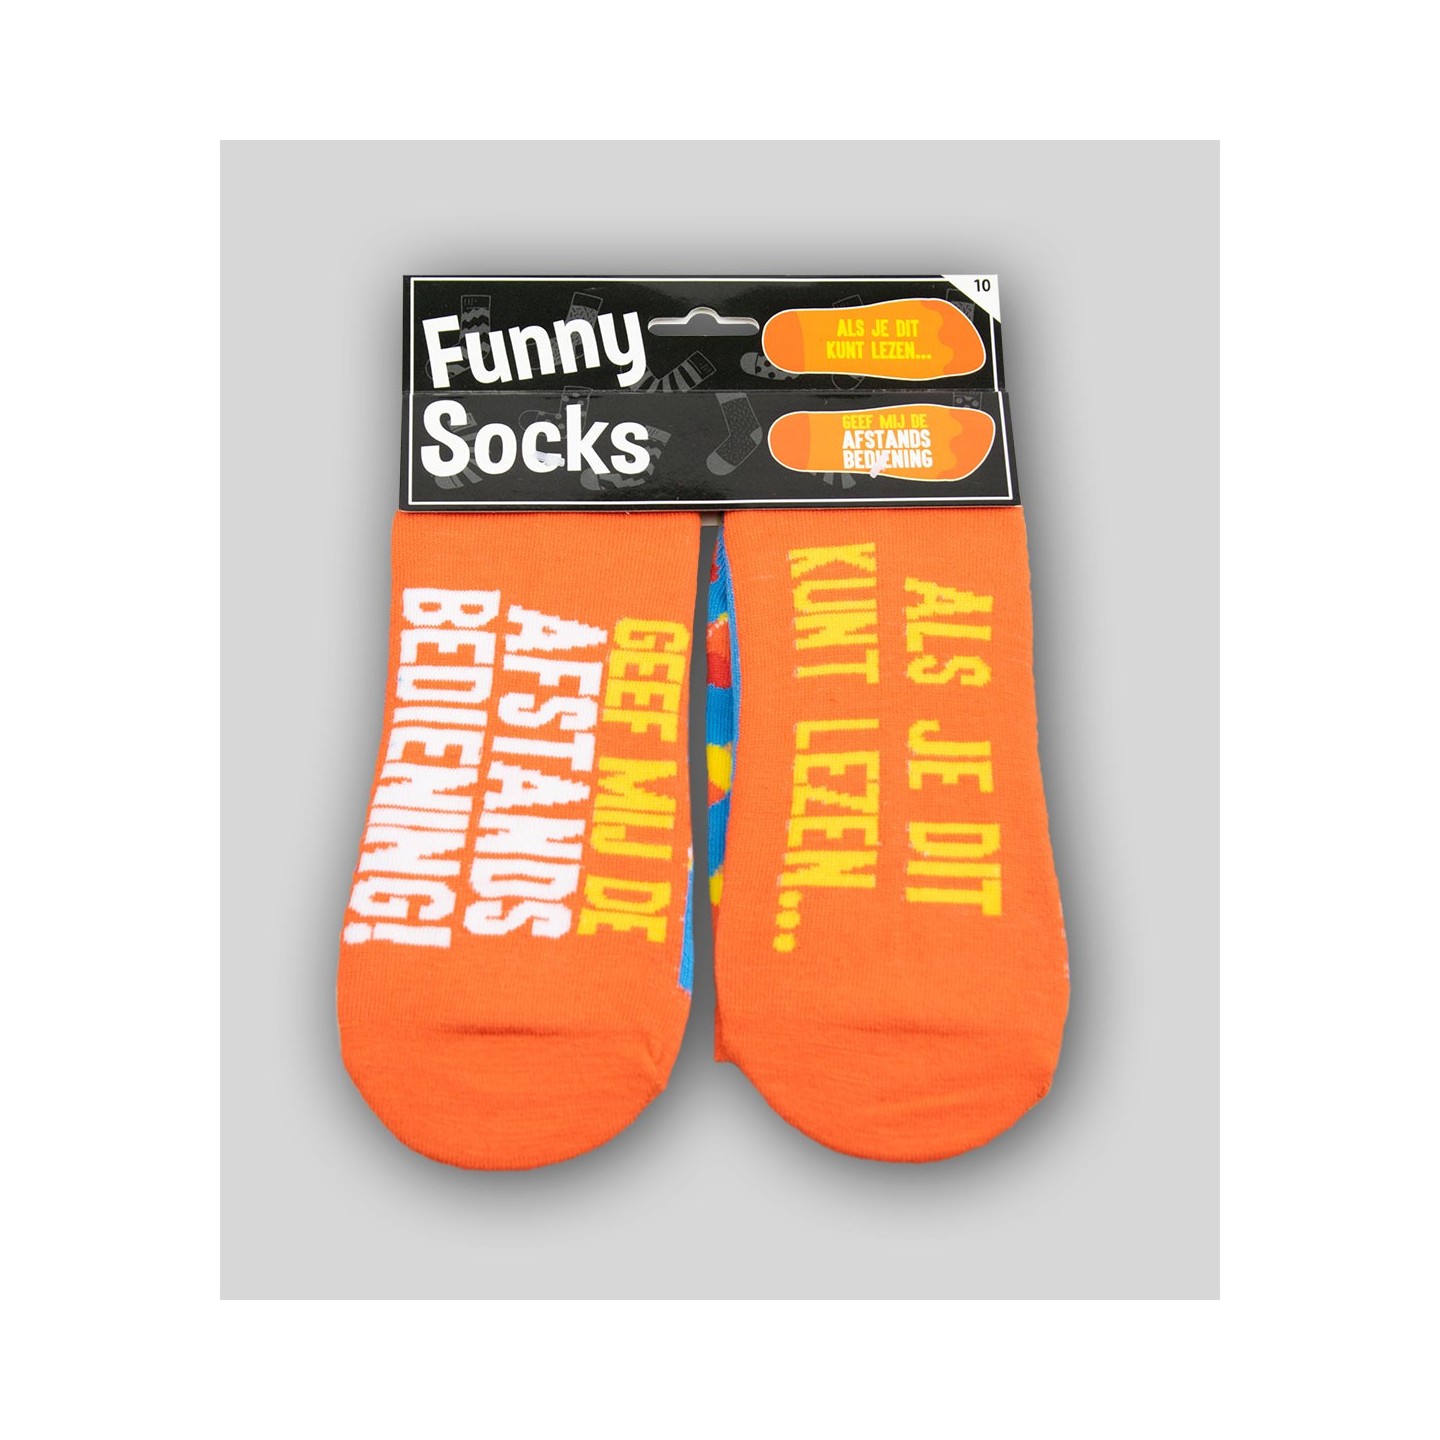 grappige sokken cadeau met tekst 